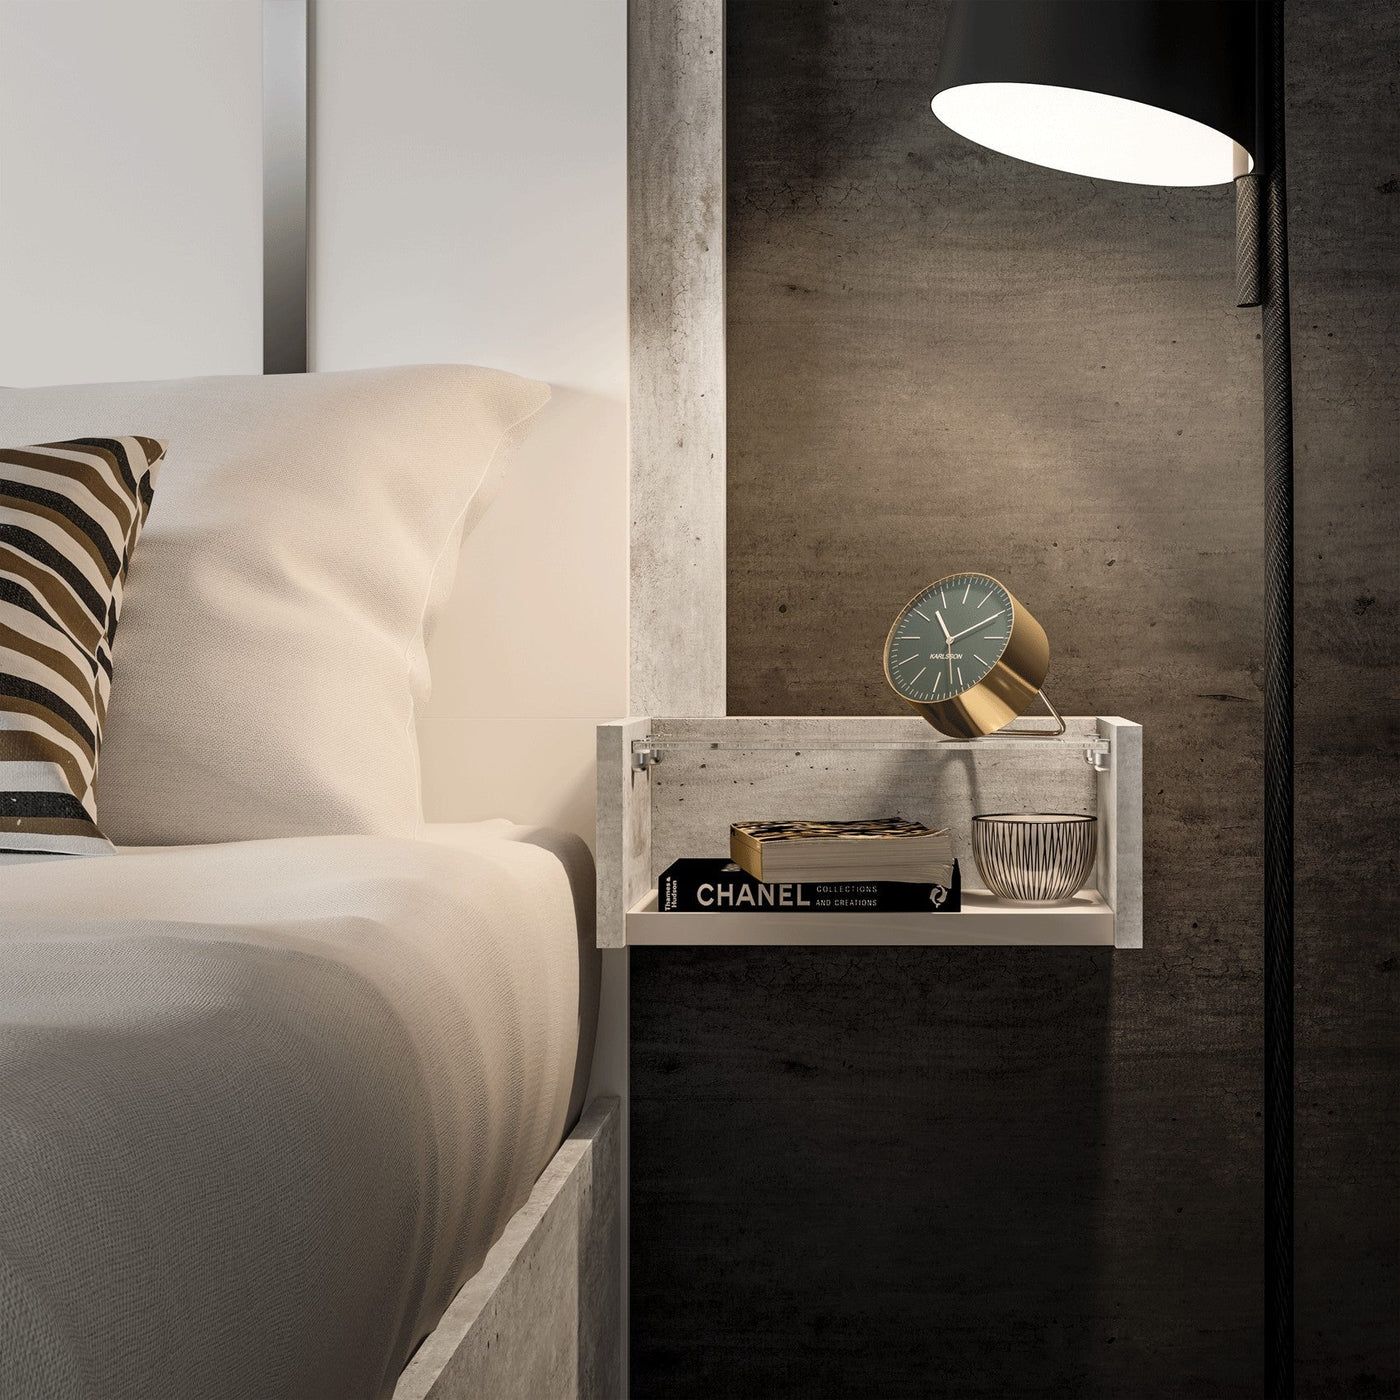 Treviso Bed-Beds-Jennifer Furniture